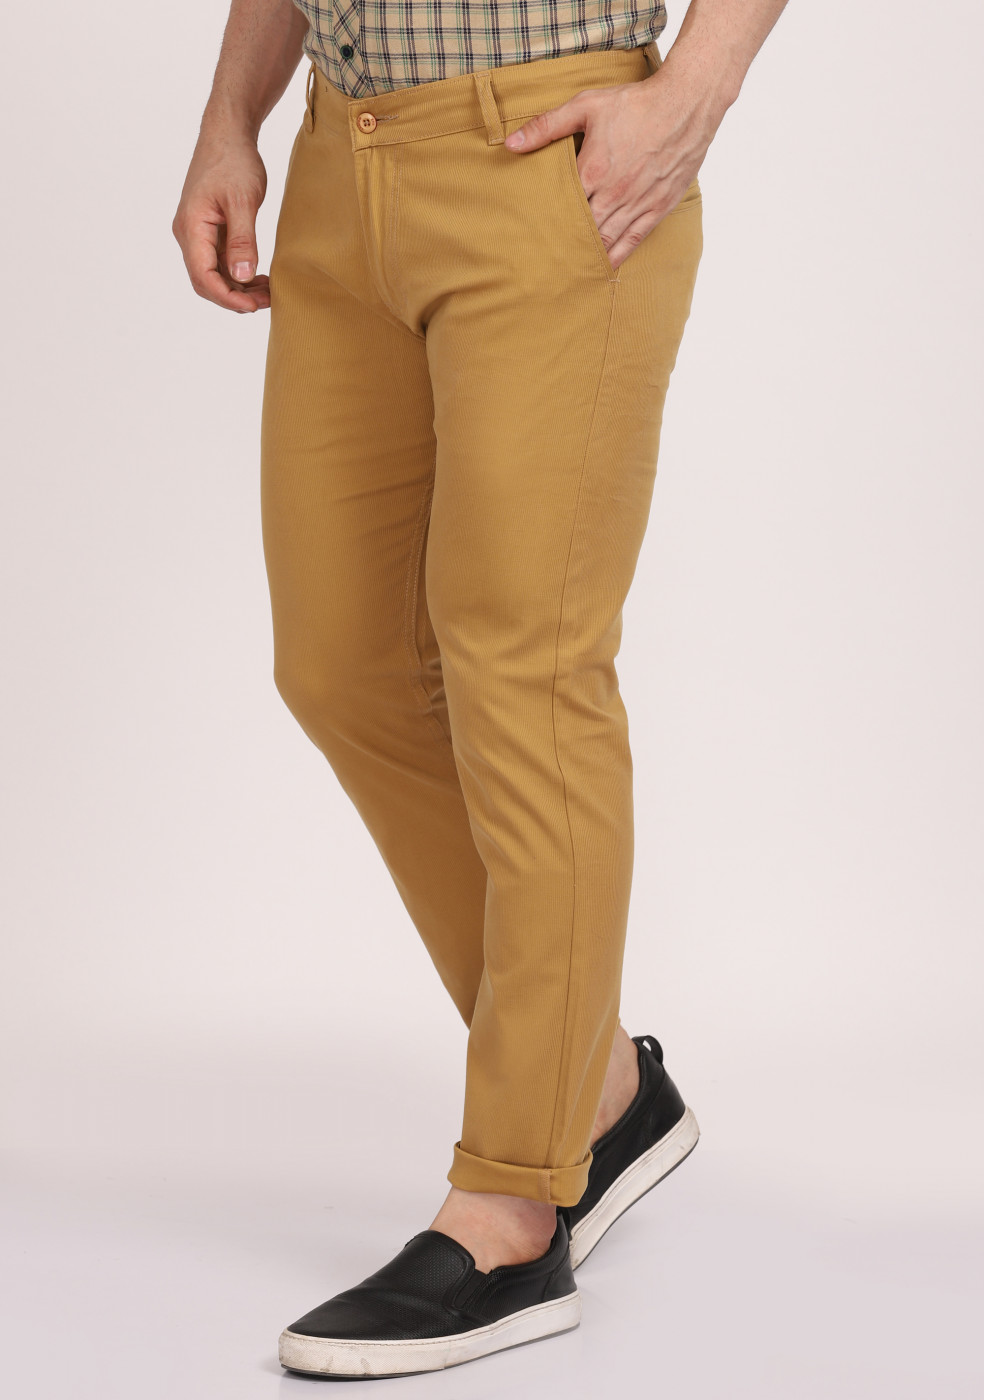 ASHTOM Cotton Khaki Formal Trouser Regular Fit For Men